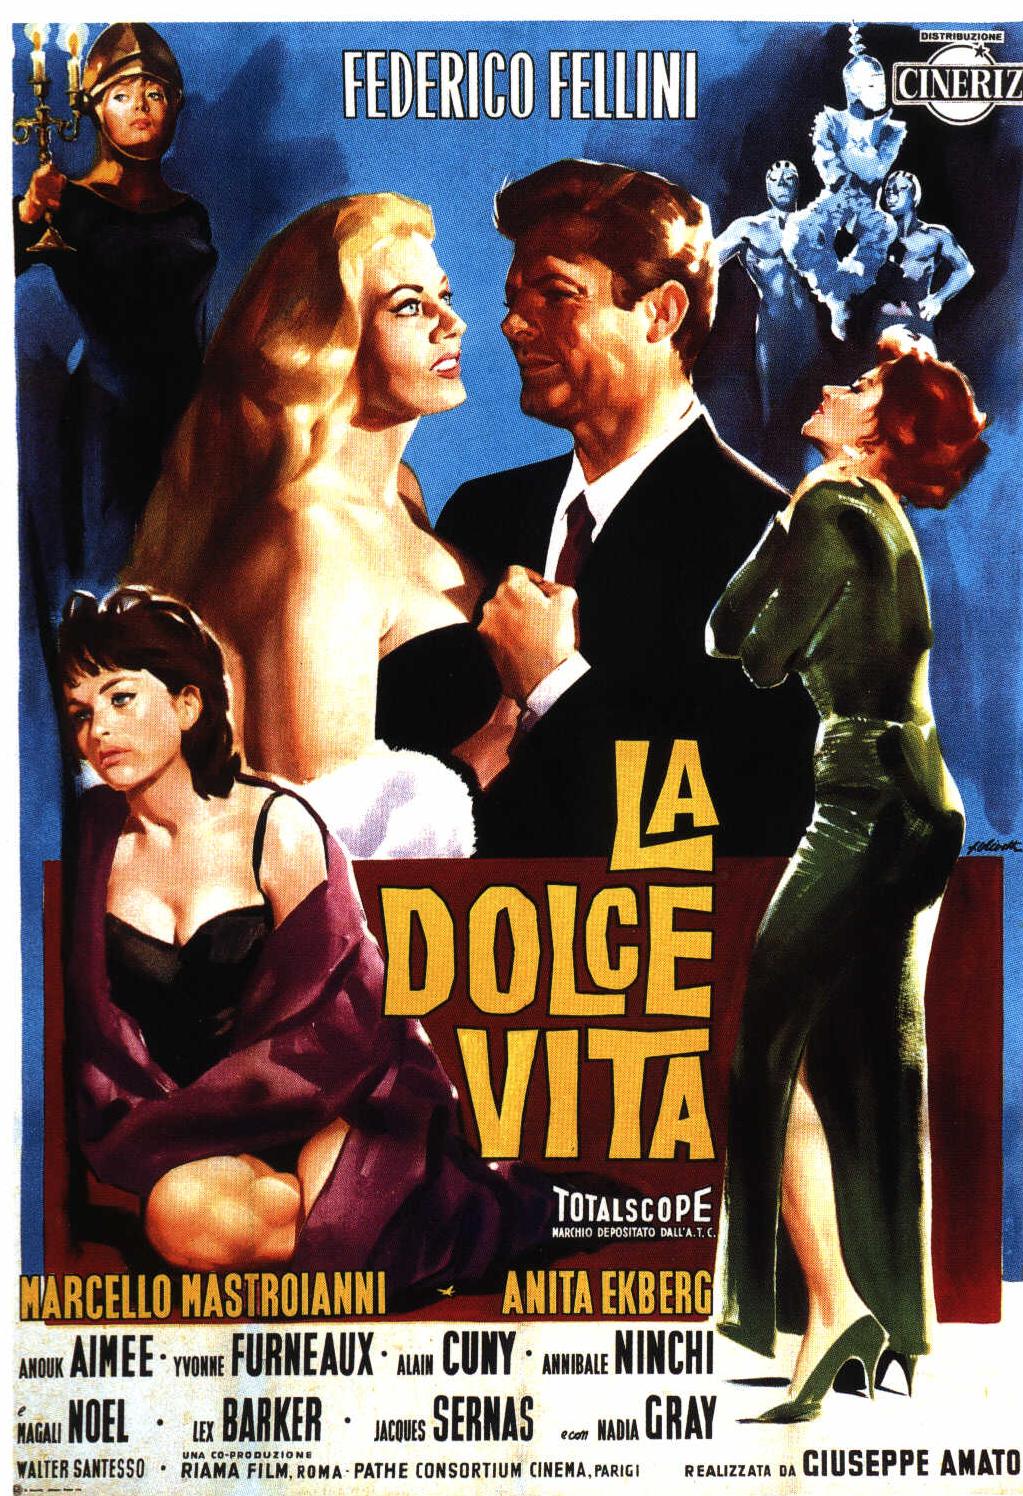 Fellini 100 & the movie La Dolce Vita | Tai Kwun